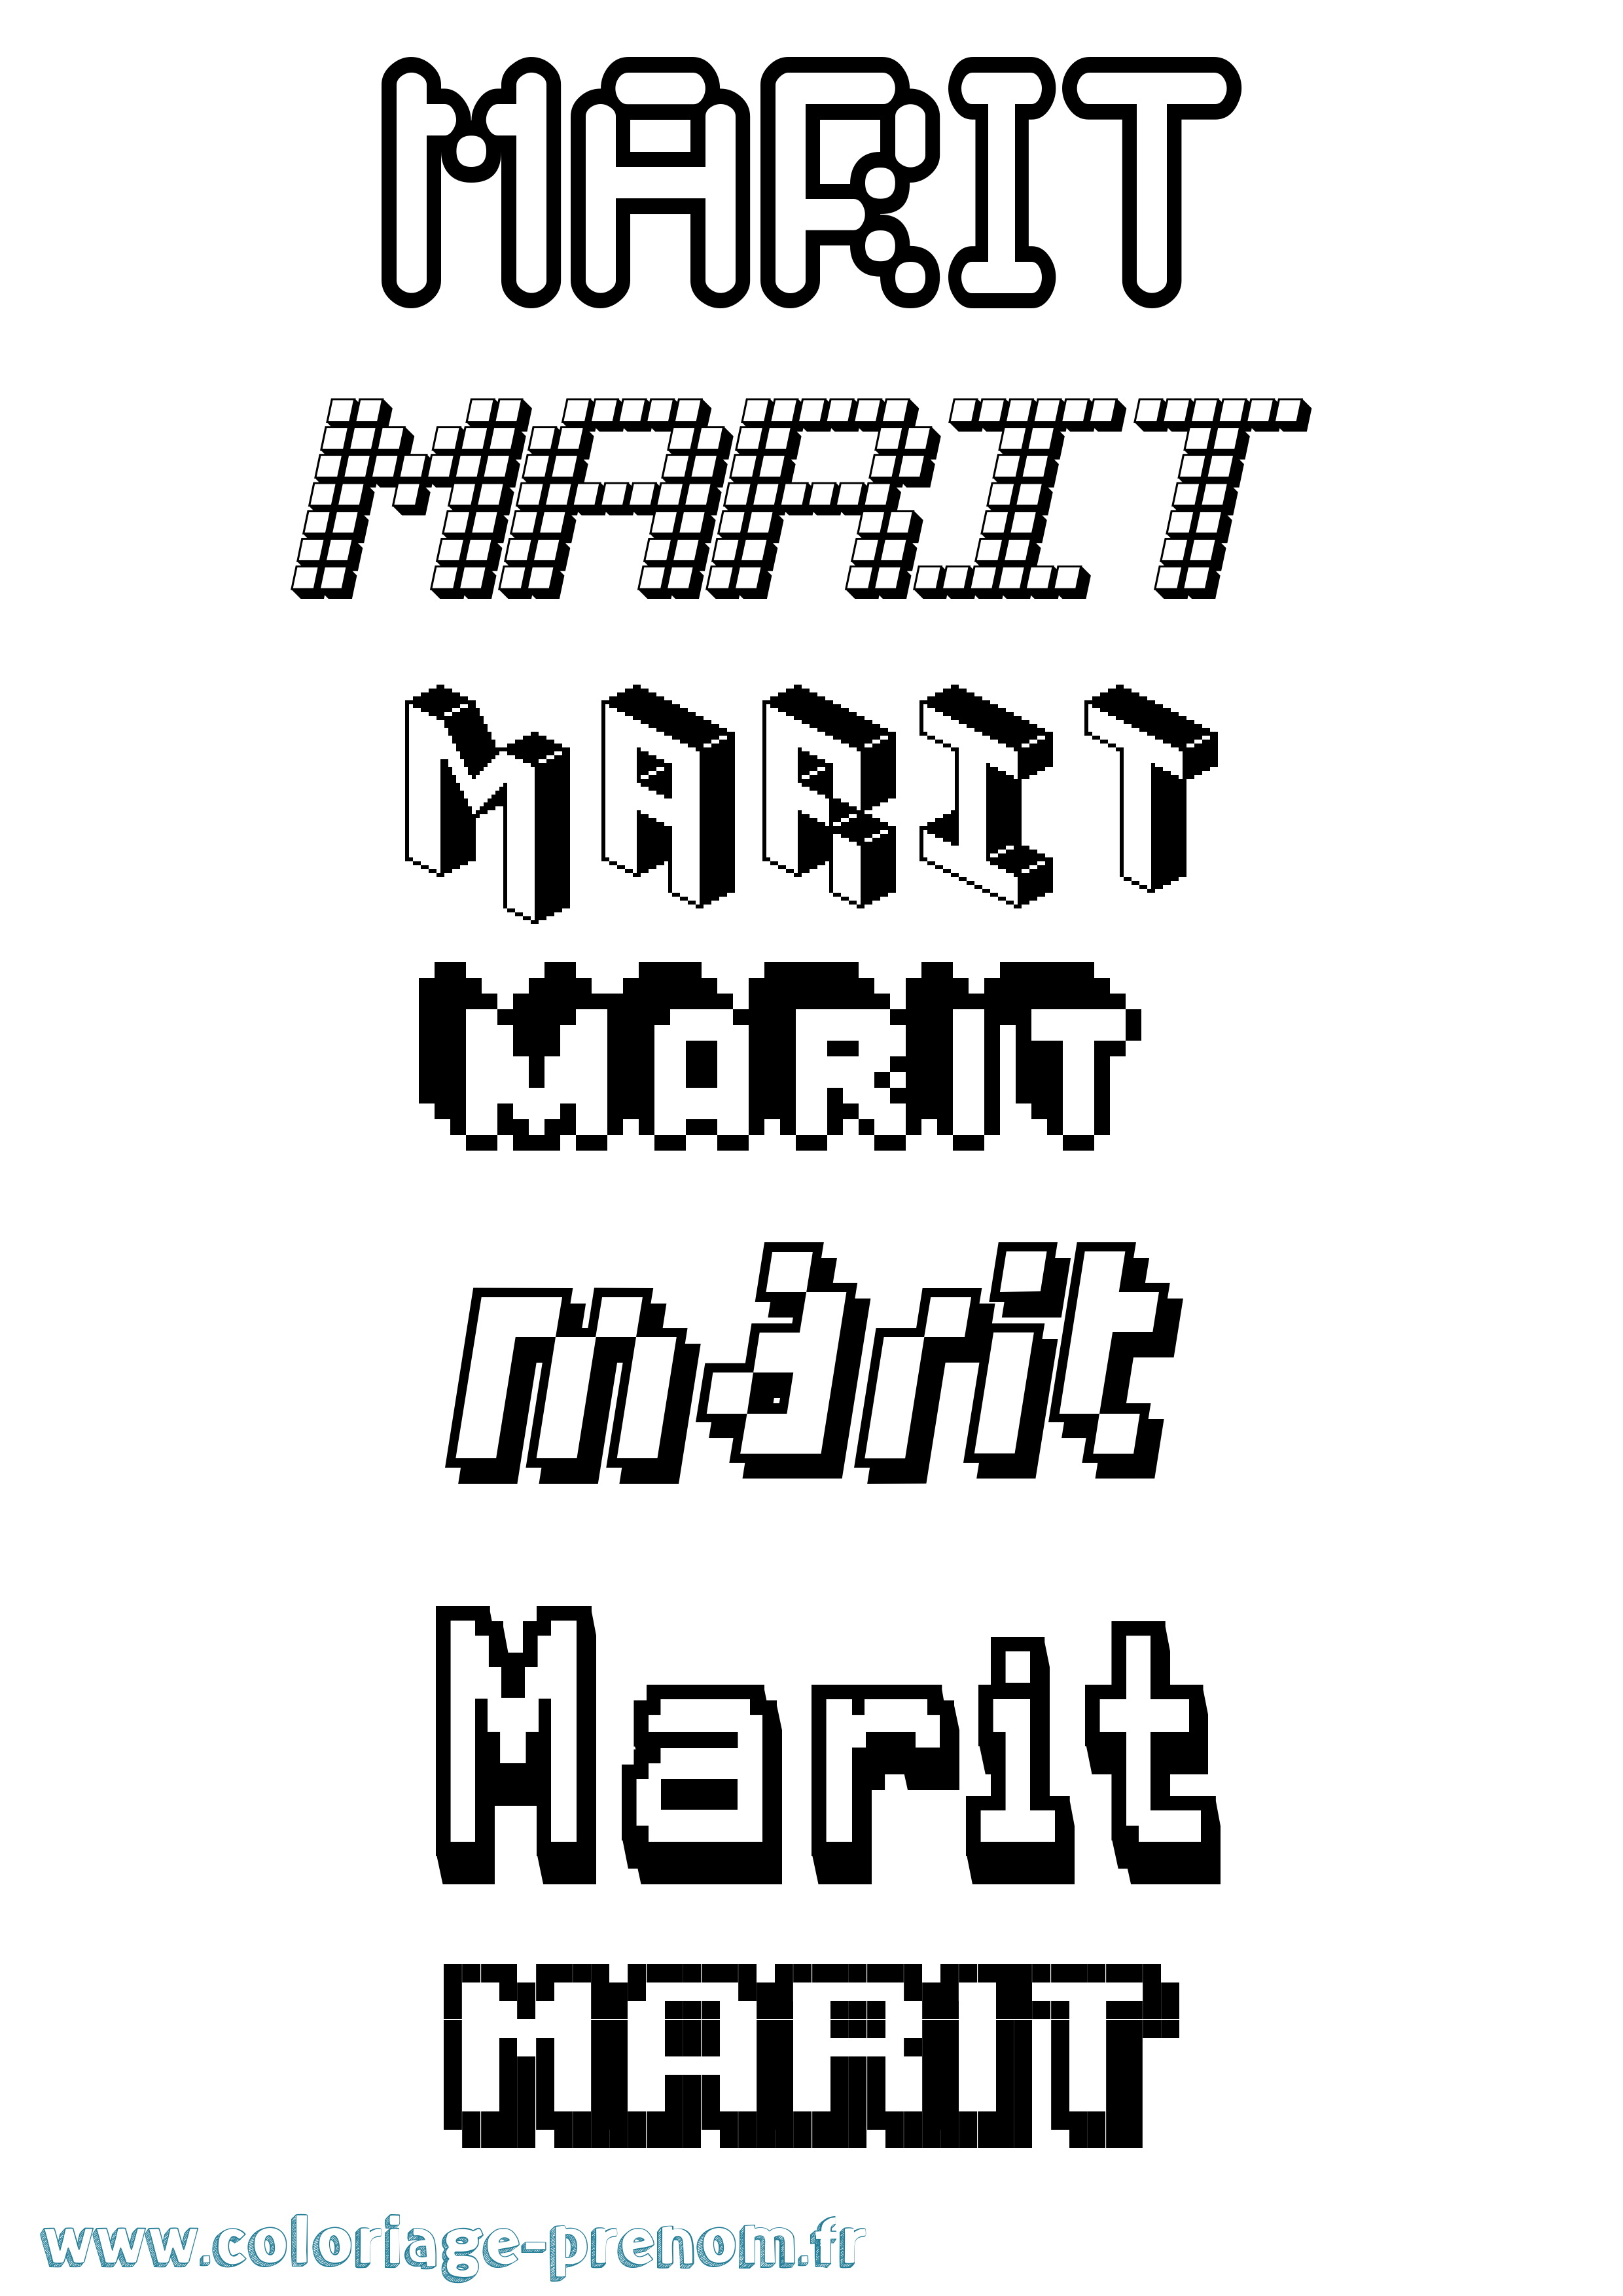 Coloriage prénom Marit Pixel